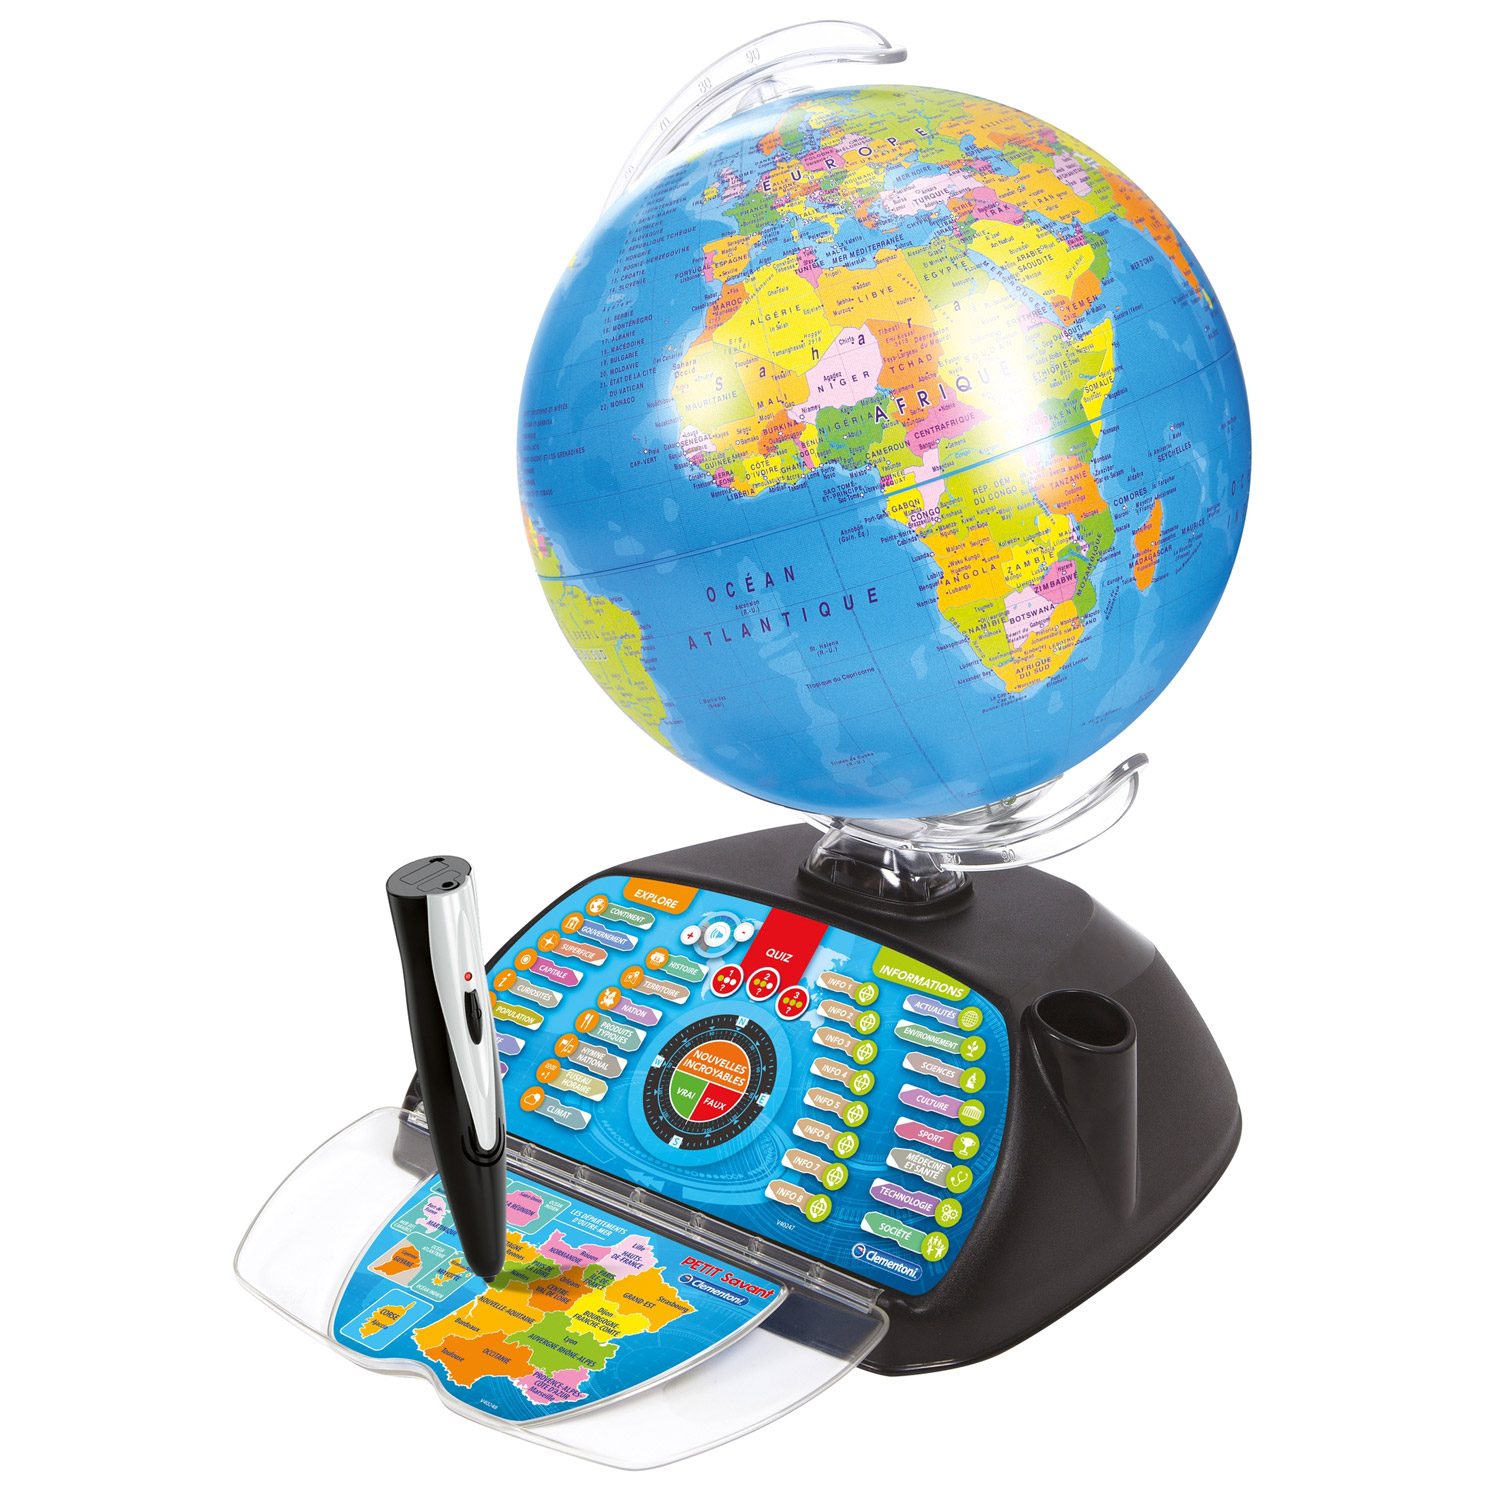 Mon premier globe interactif Clementoni FR